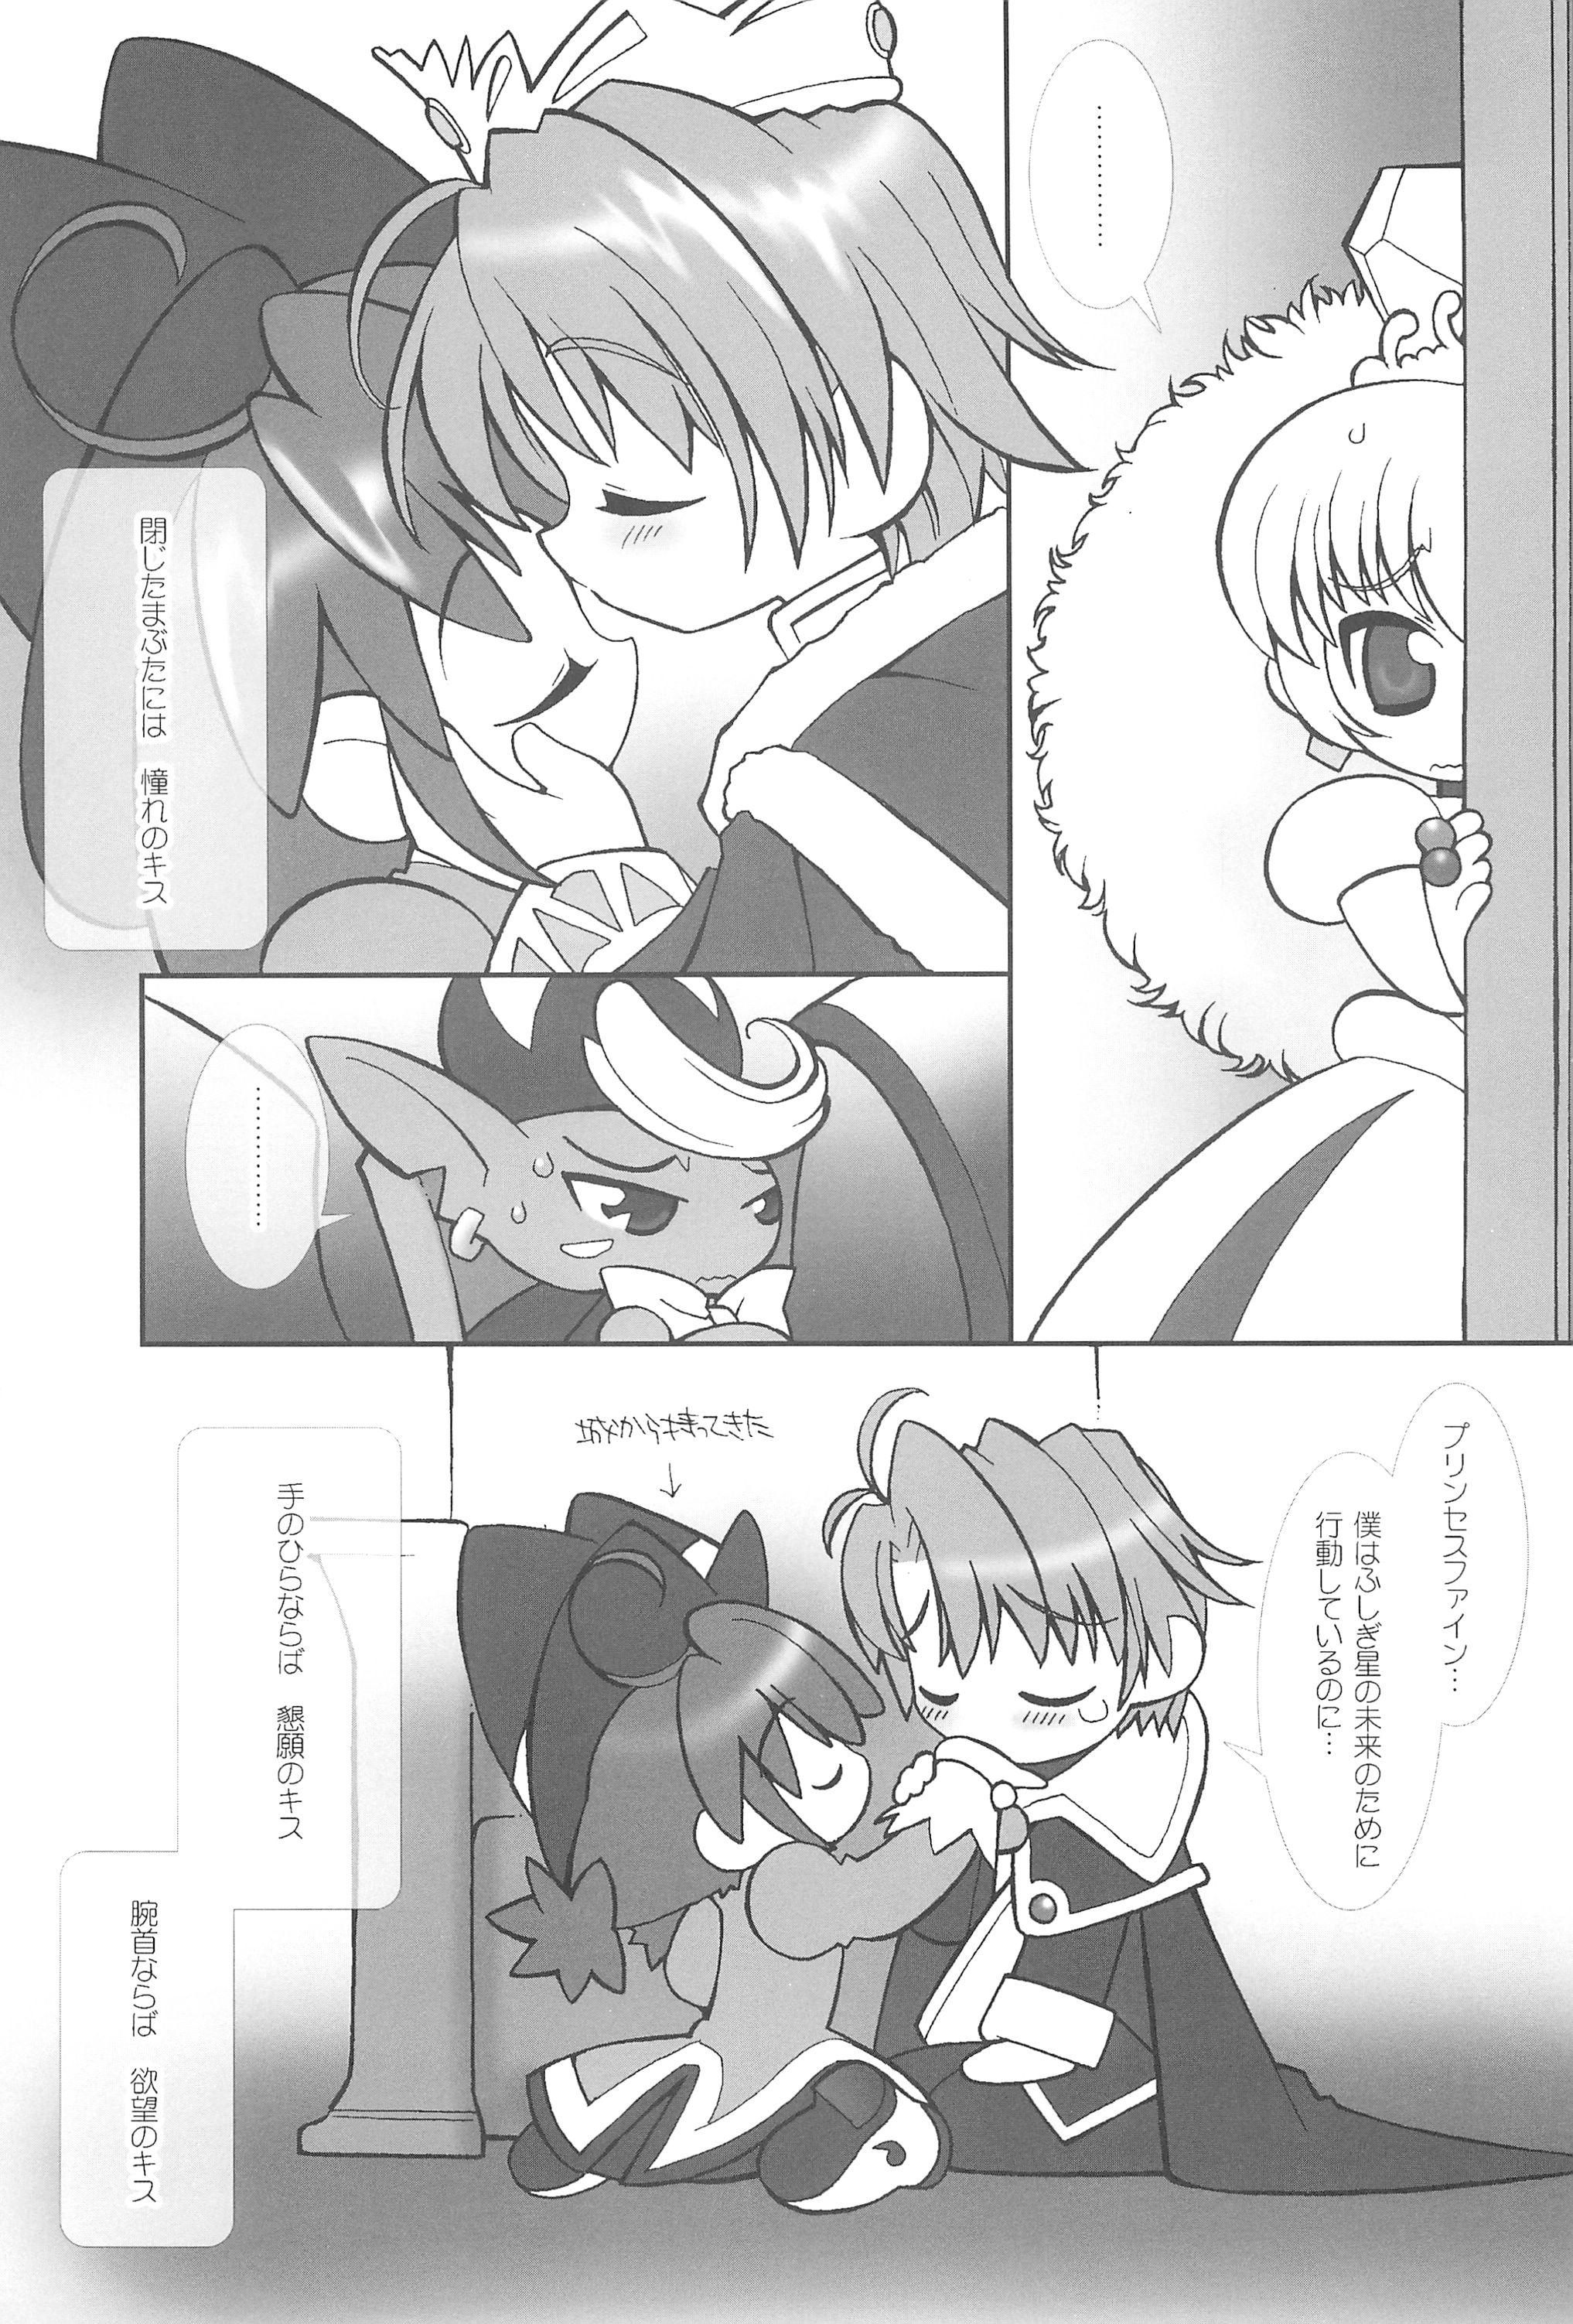 Ass To Mouth Tsuki no Ura de Aimashou #6 - Let's go to the Darkside of the Moon #6 - Fushigiboshi no futagohime Cute - Page 7